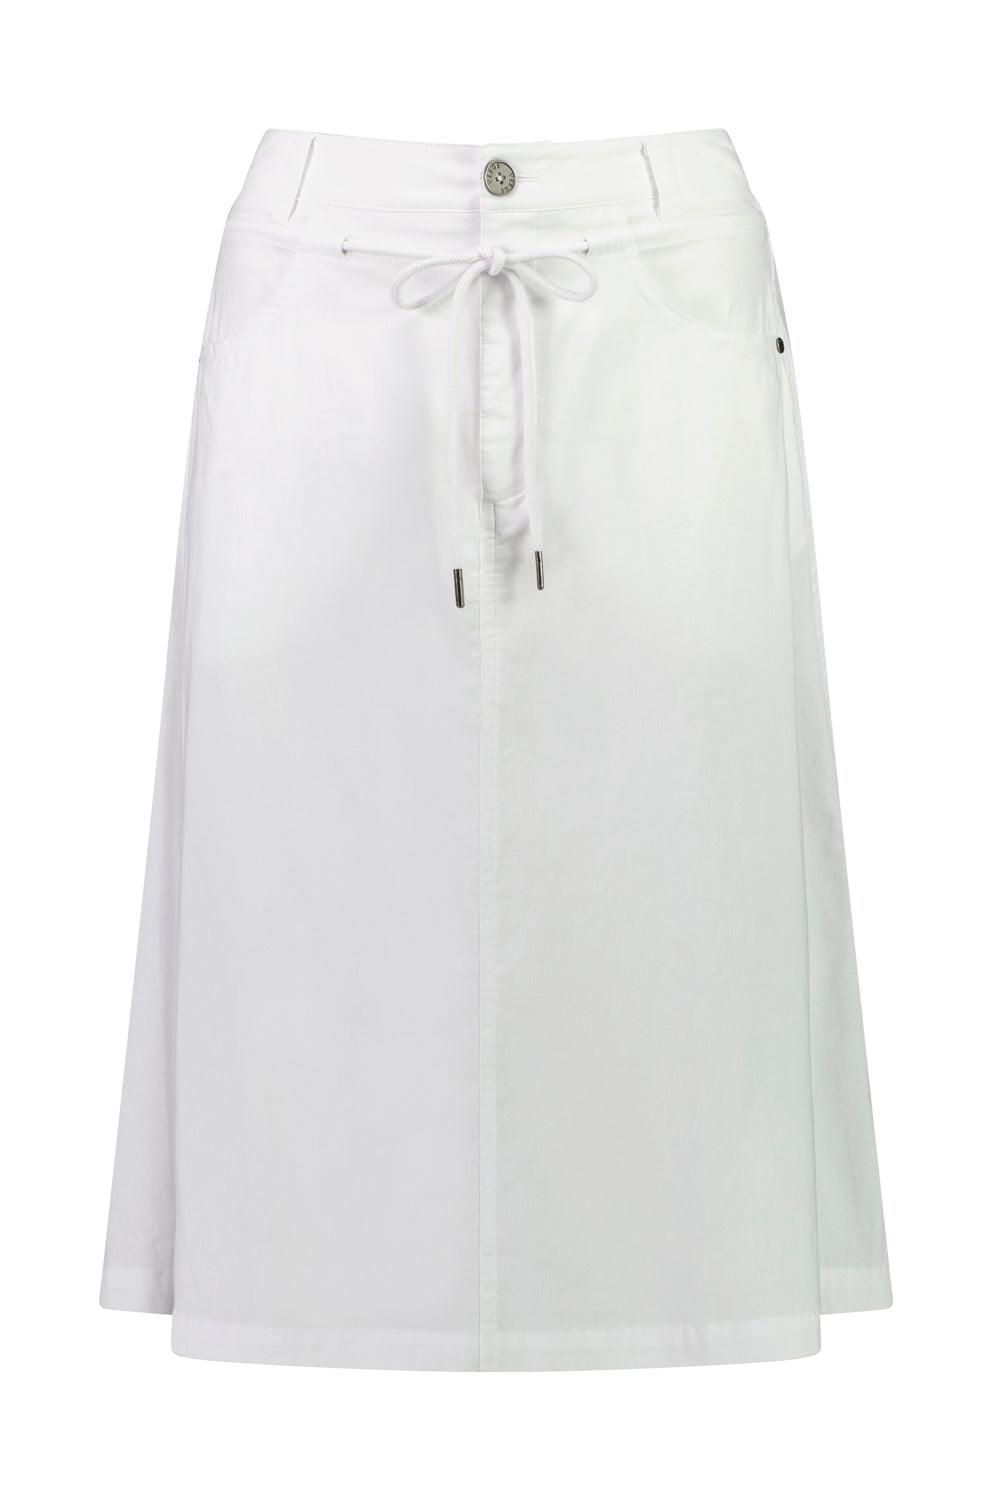 Acrobat Talent Skirt - White - Skirt VERGE